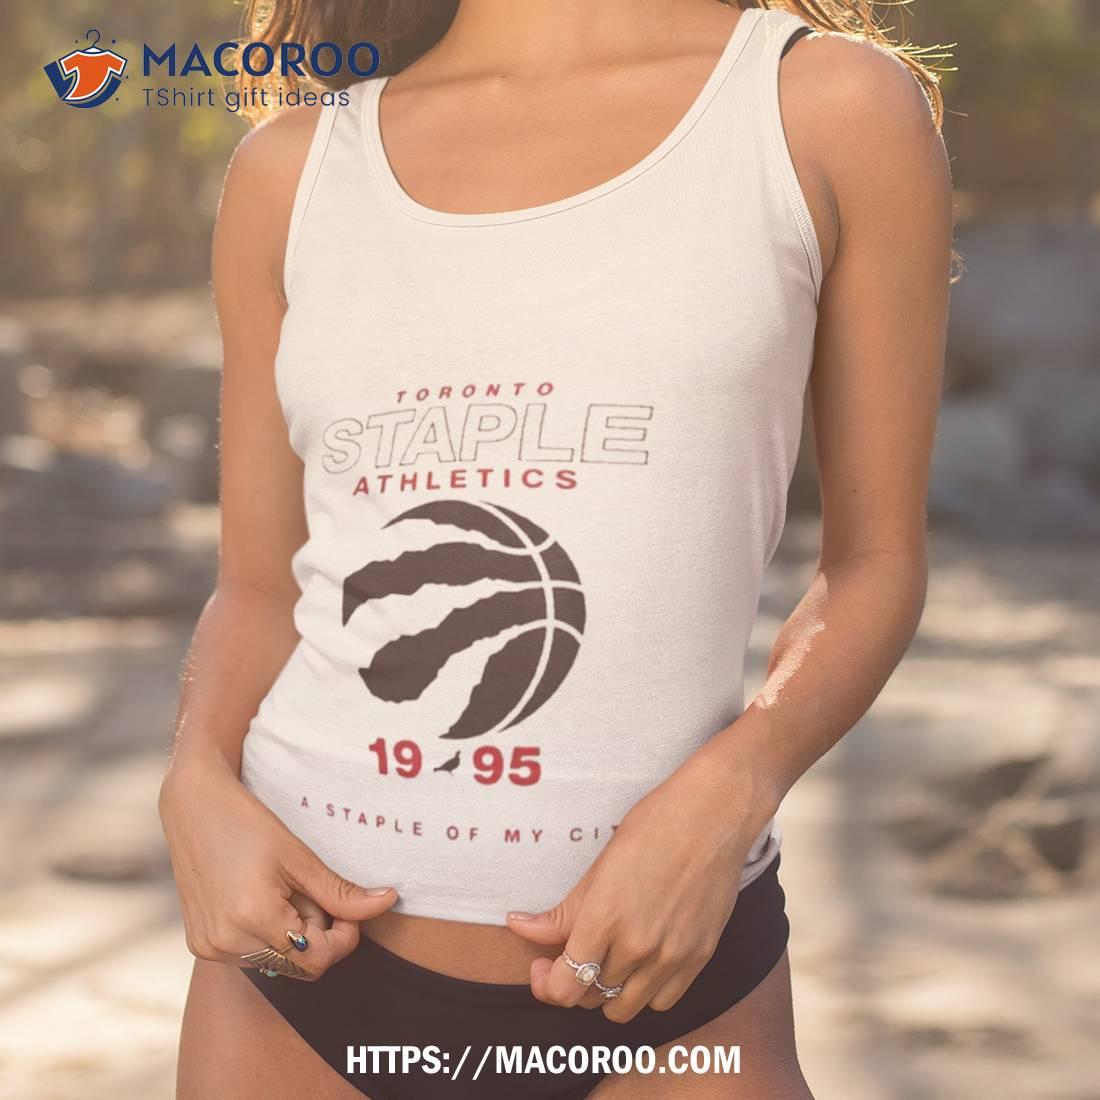 Toronto Raptors Nba X Staple Home Team T-shirt - Shibtee Clothing